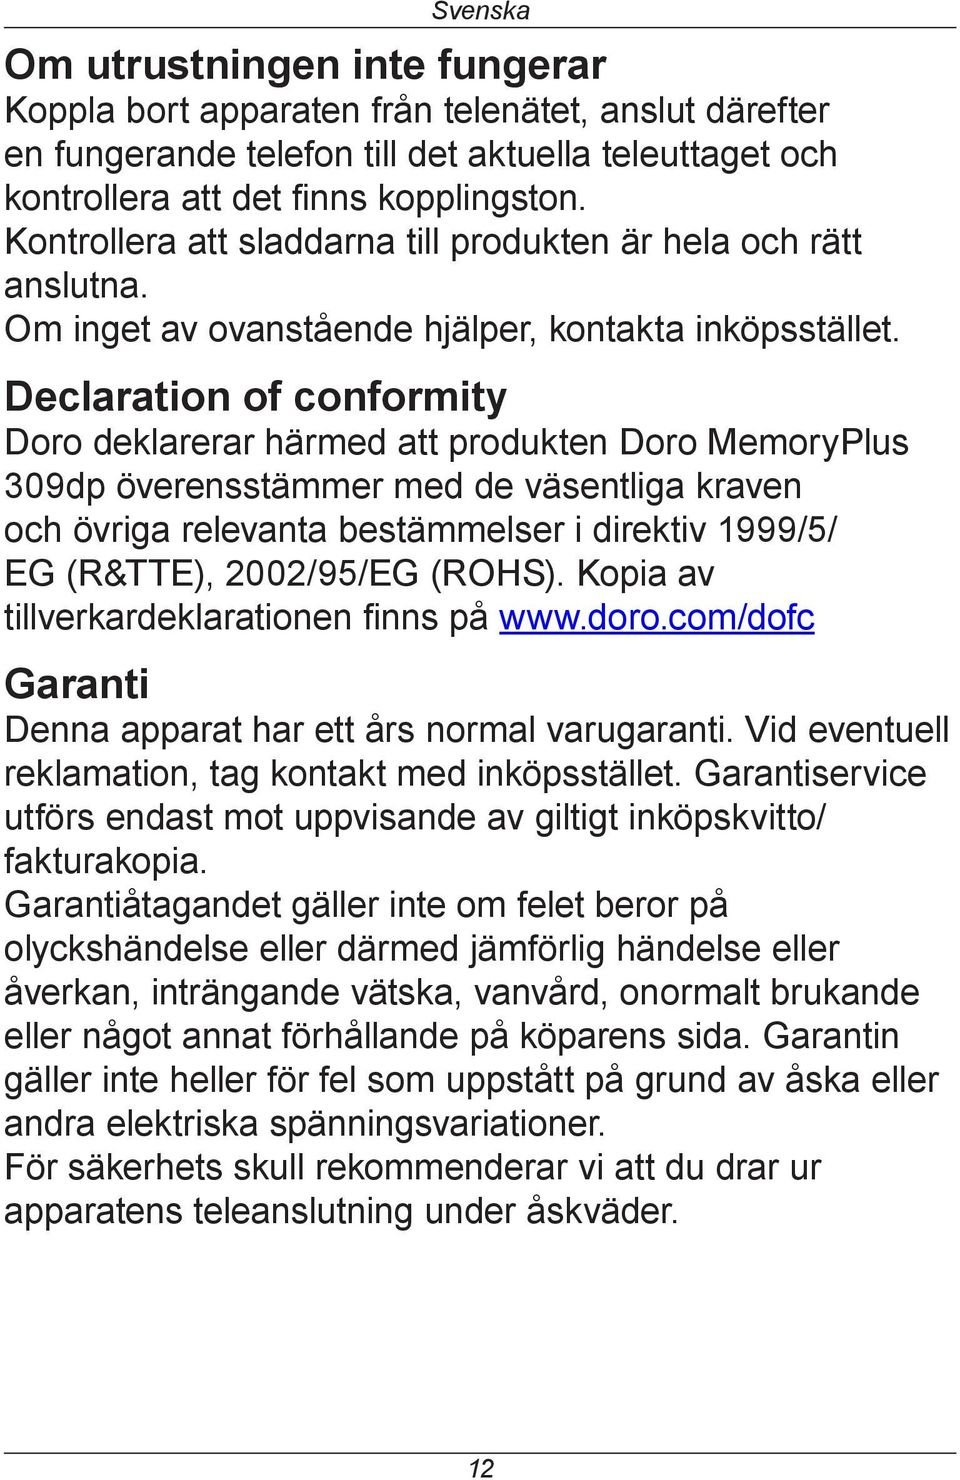 Declaration of conformity Doro deklarerar härmed att produkten Doro MemoryPlus 309dp överensstämmer med de väsentliga kraven och övriga relevanta bestämmelser i direktiv 1999/5/ EG (R&TTE),